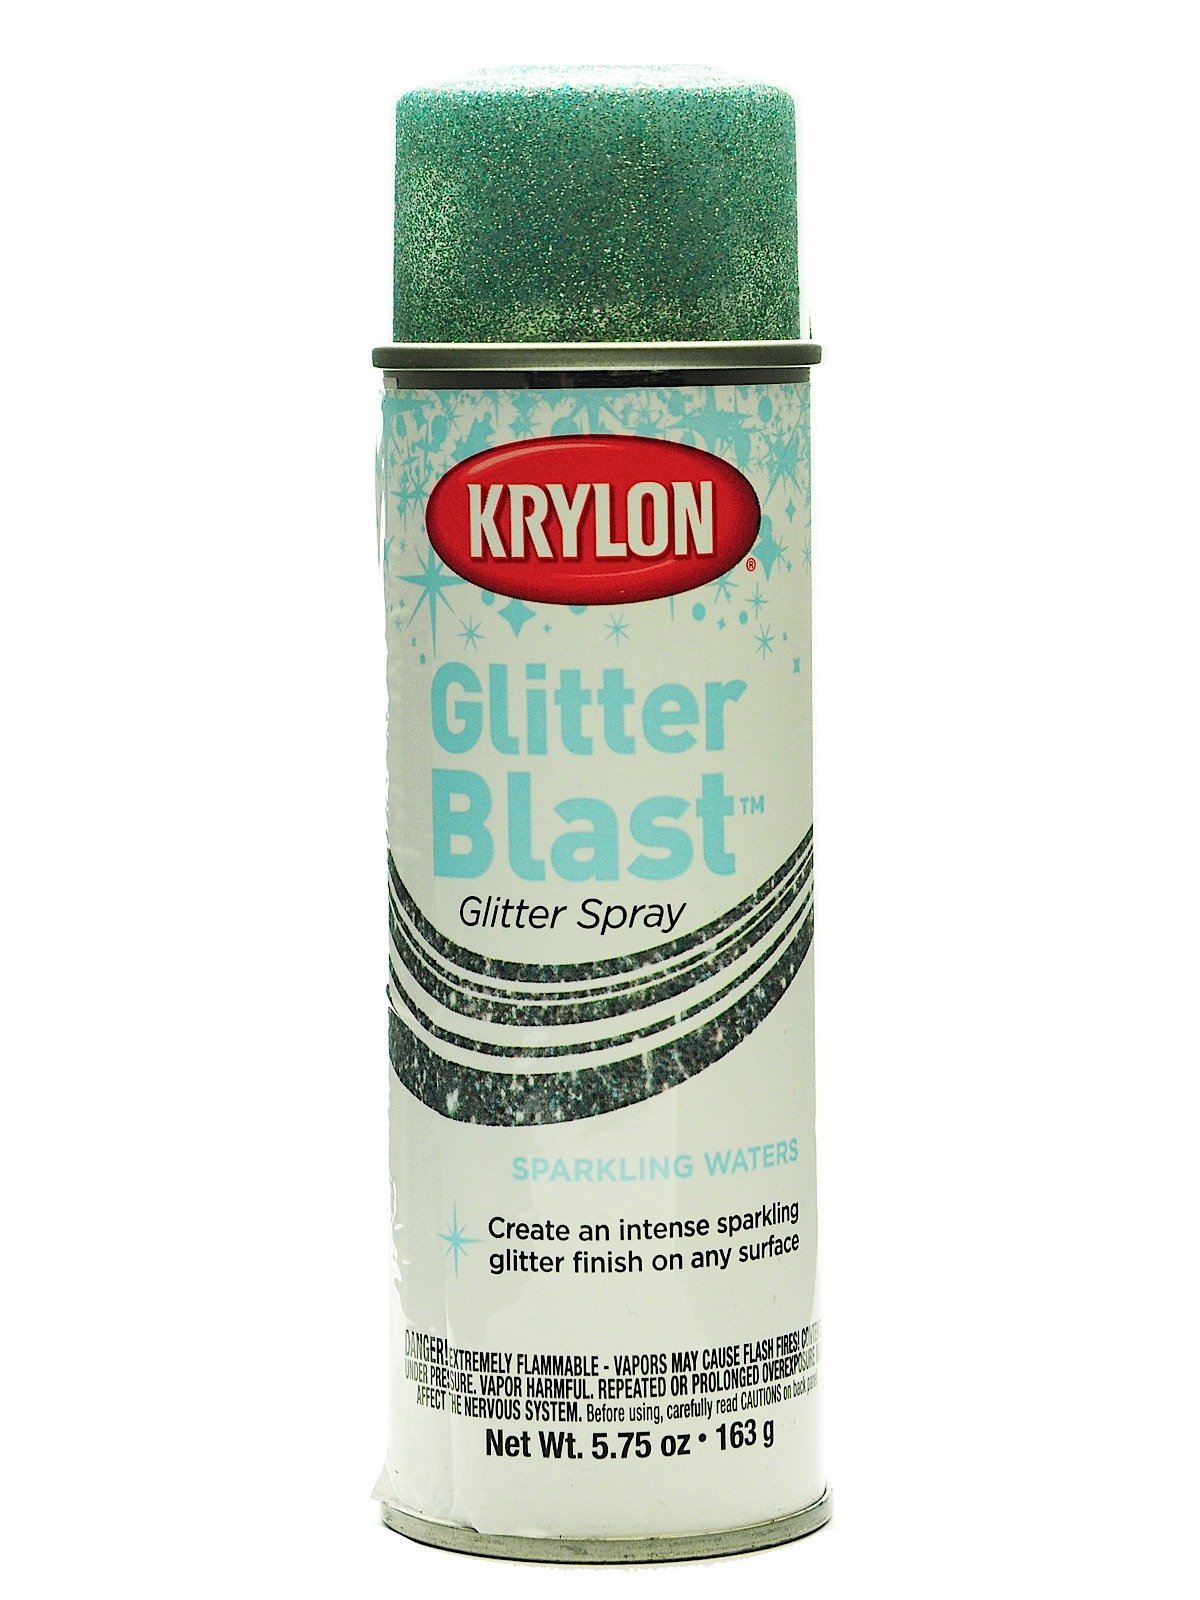 Krylon Glitter Blast Diamond Dust